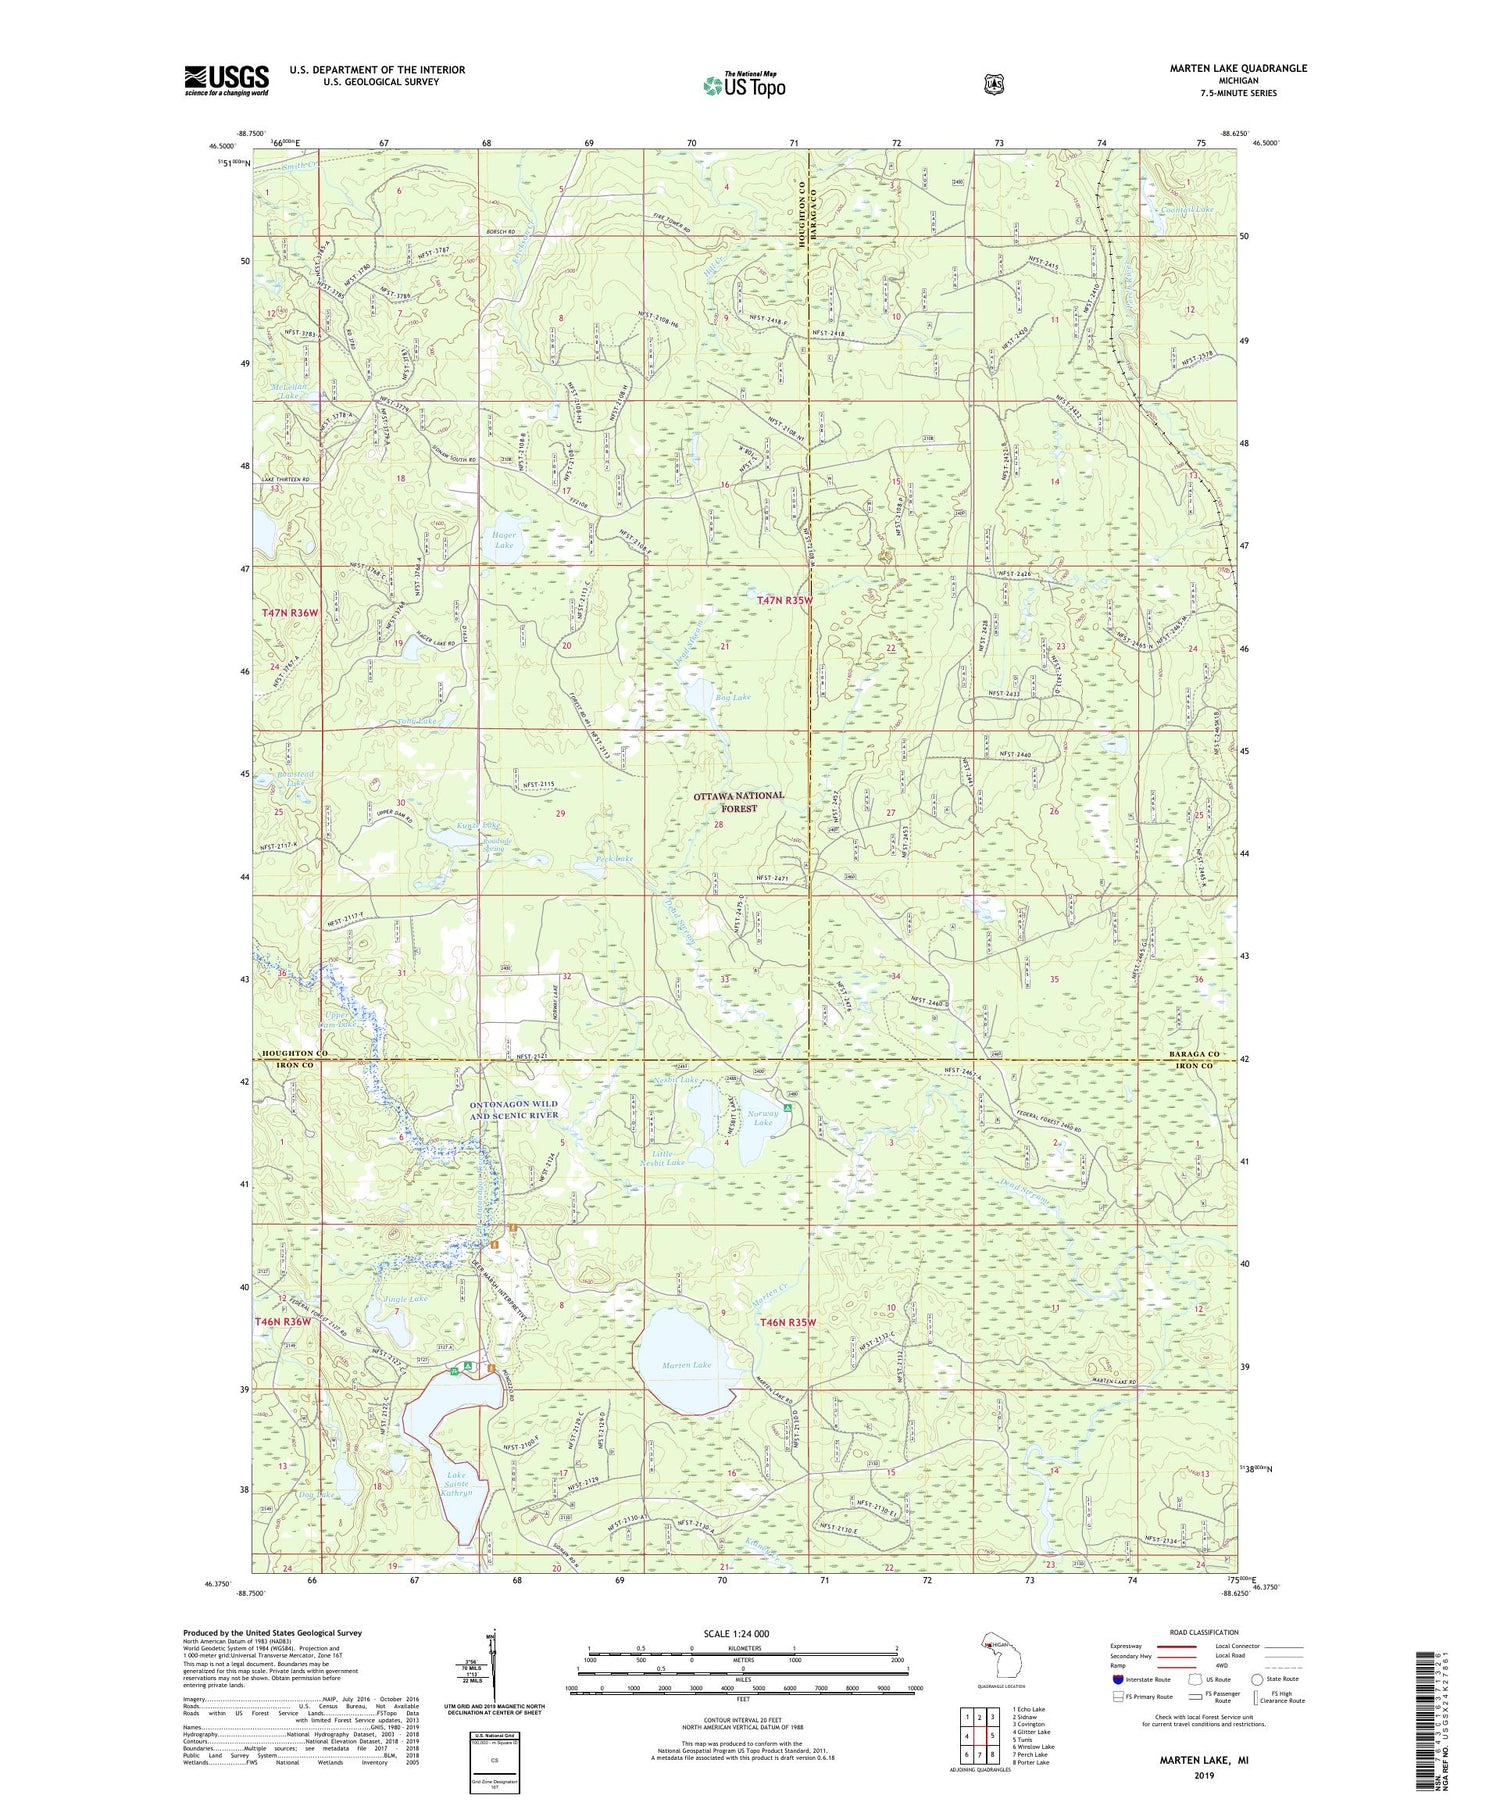 Marten Lake Michigan US Topo Map Image